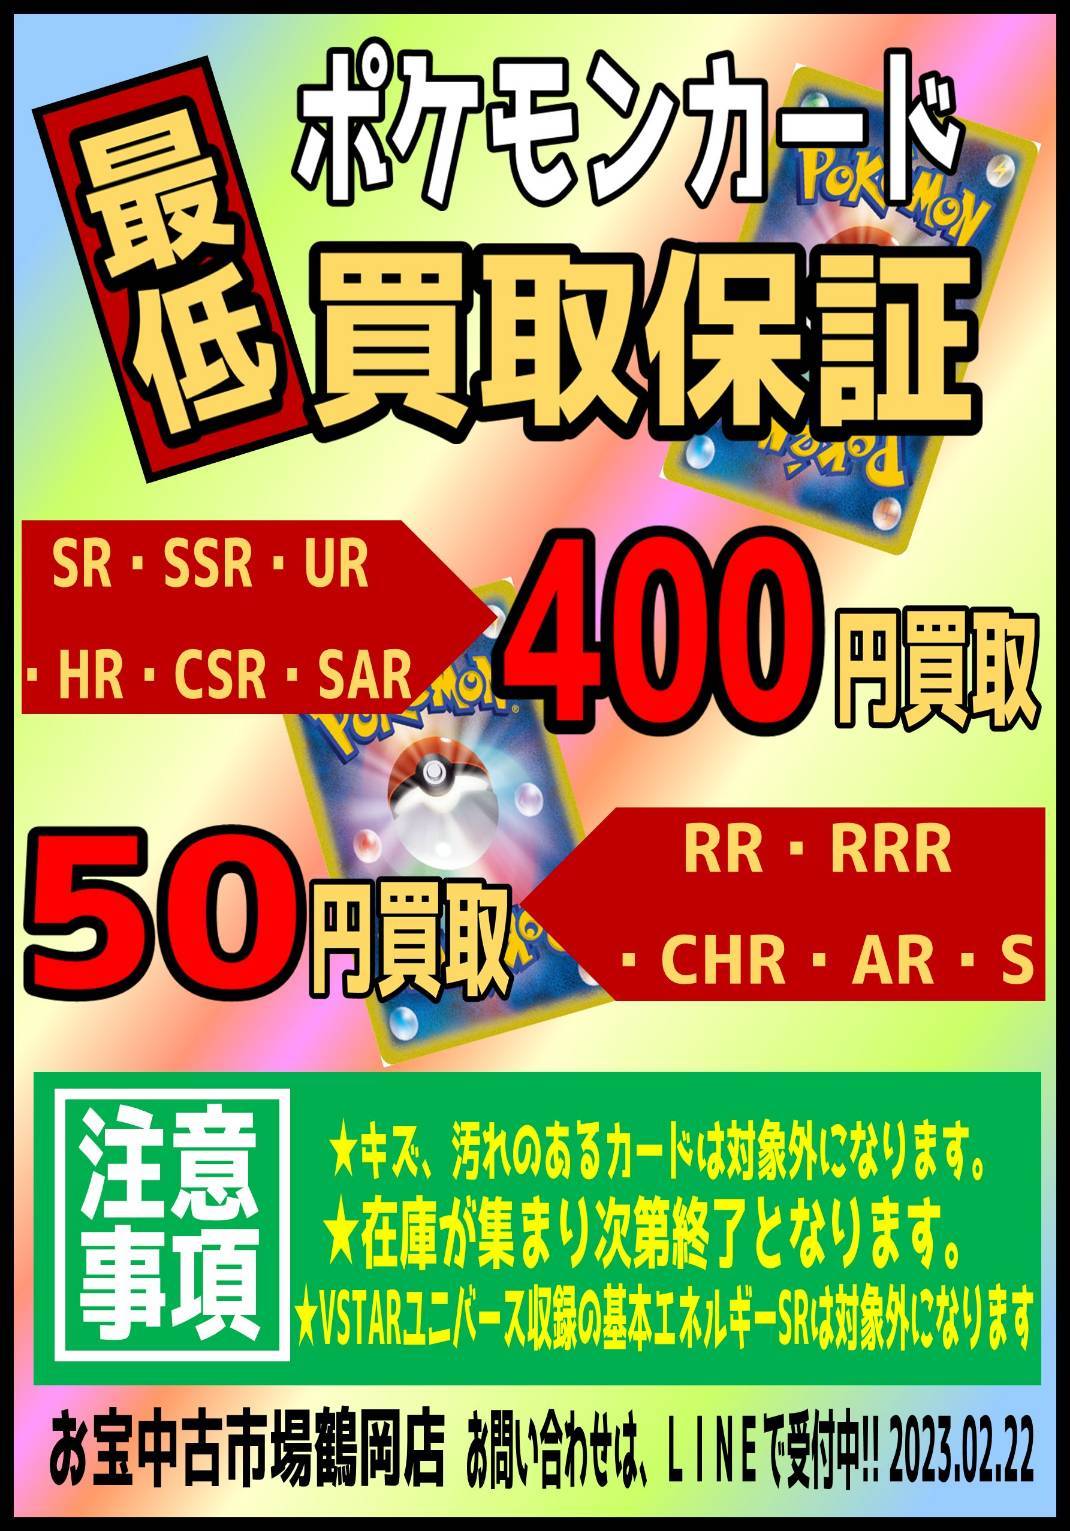 ☆《ポケモンカード》本日18:00まで限定でRR、RRR系が50円に買取アップ